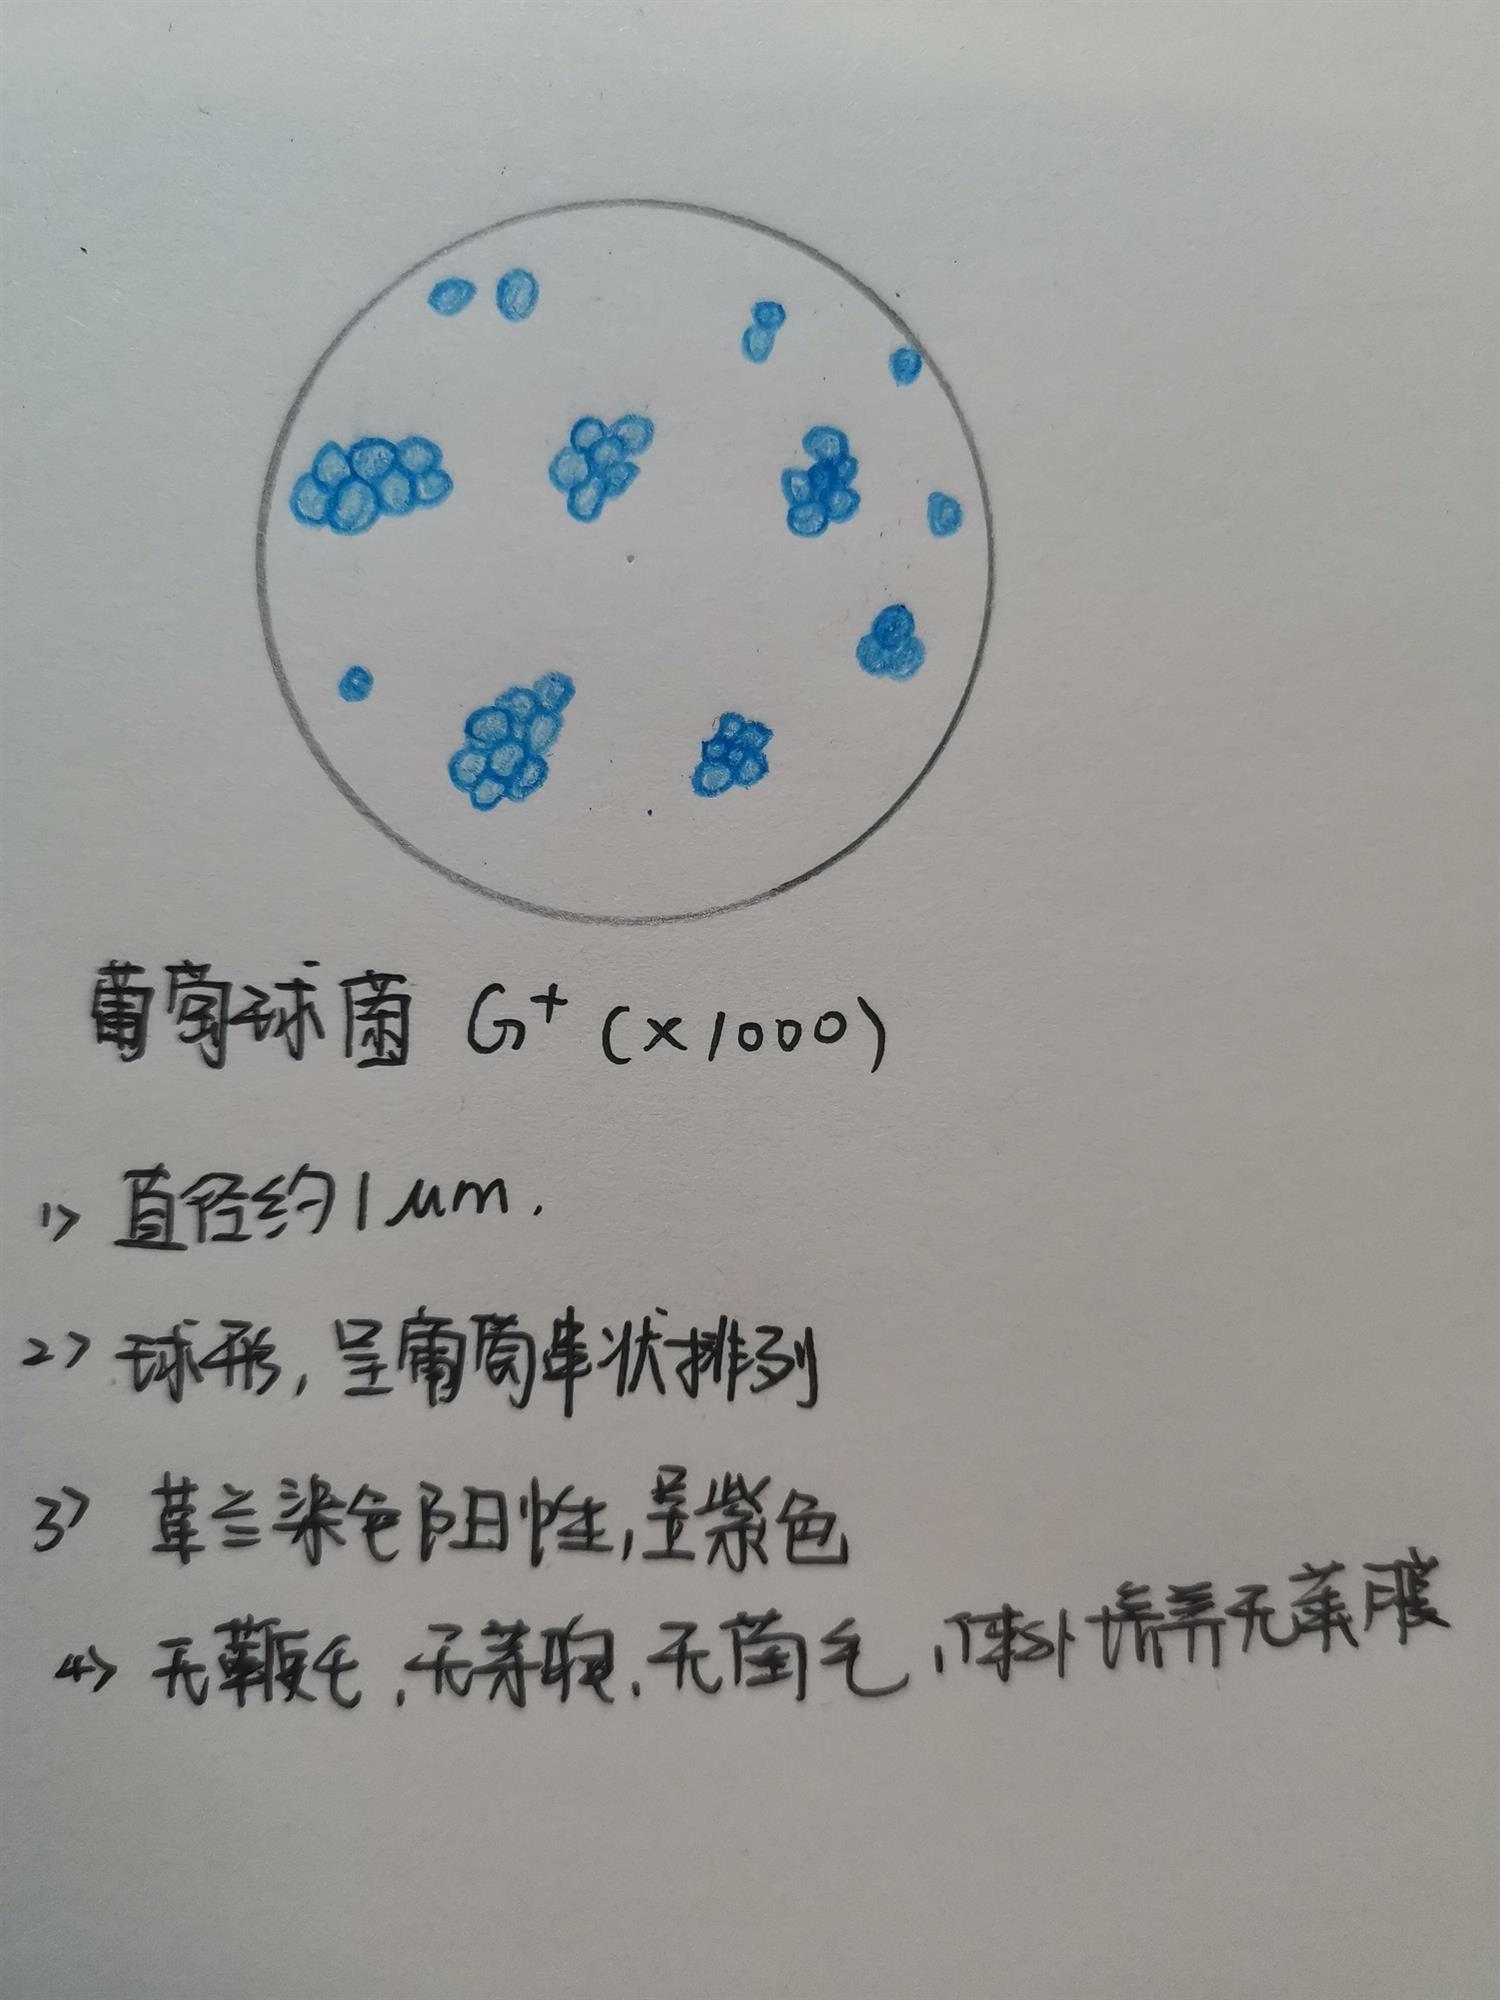 葡萄球菌绘图红蓝铅笔图片